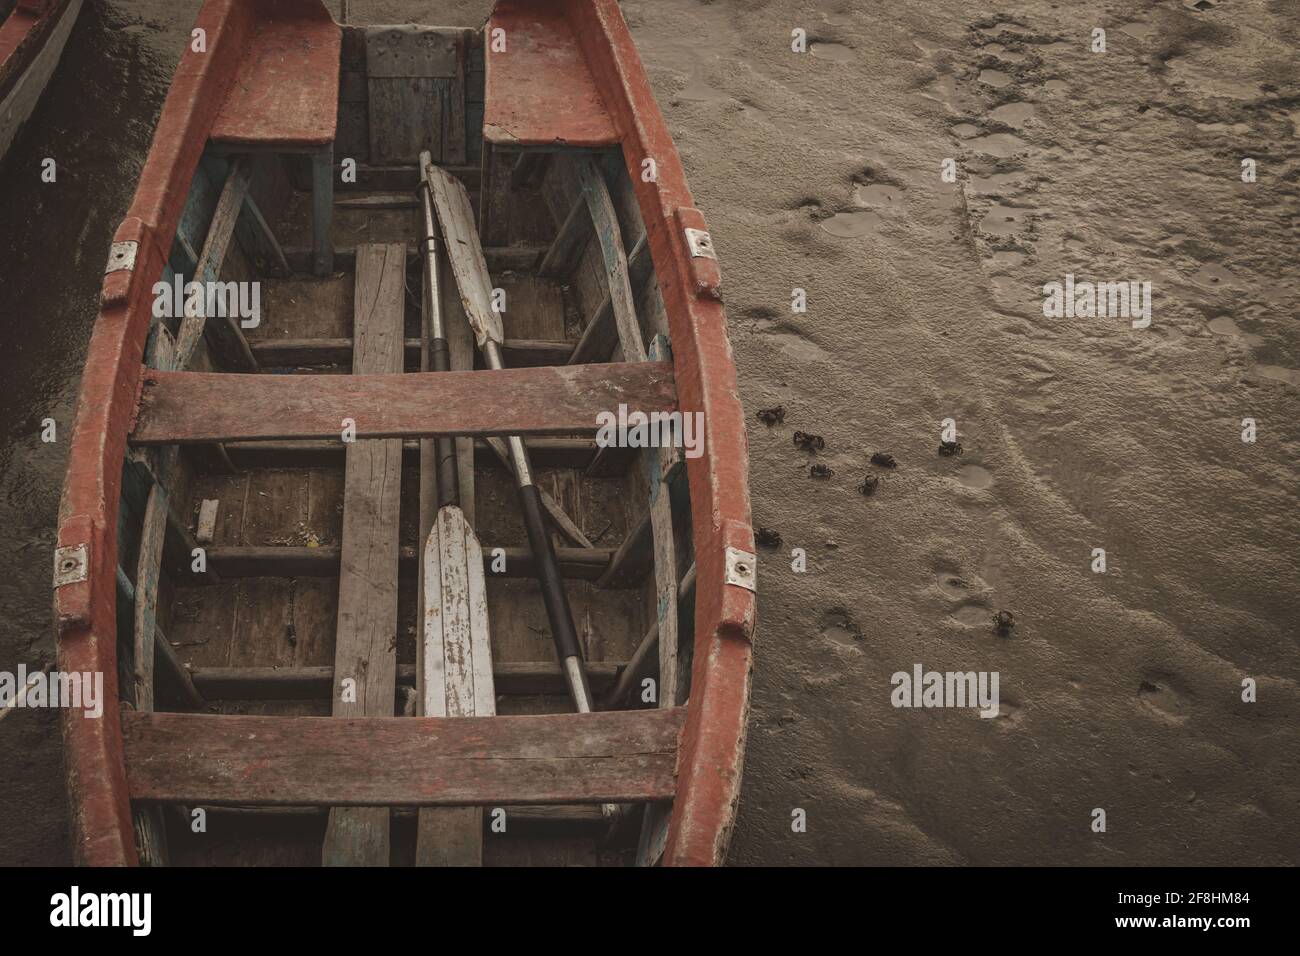 BAHIA BLANCA, ARGENTINA - Mar 08, 2020: Bote de madera, amarrado al muelle, se encuentra con marea baja en el cual se llega a apreciar cangrejos . Stock Photo